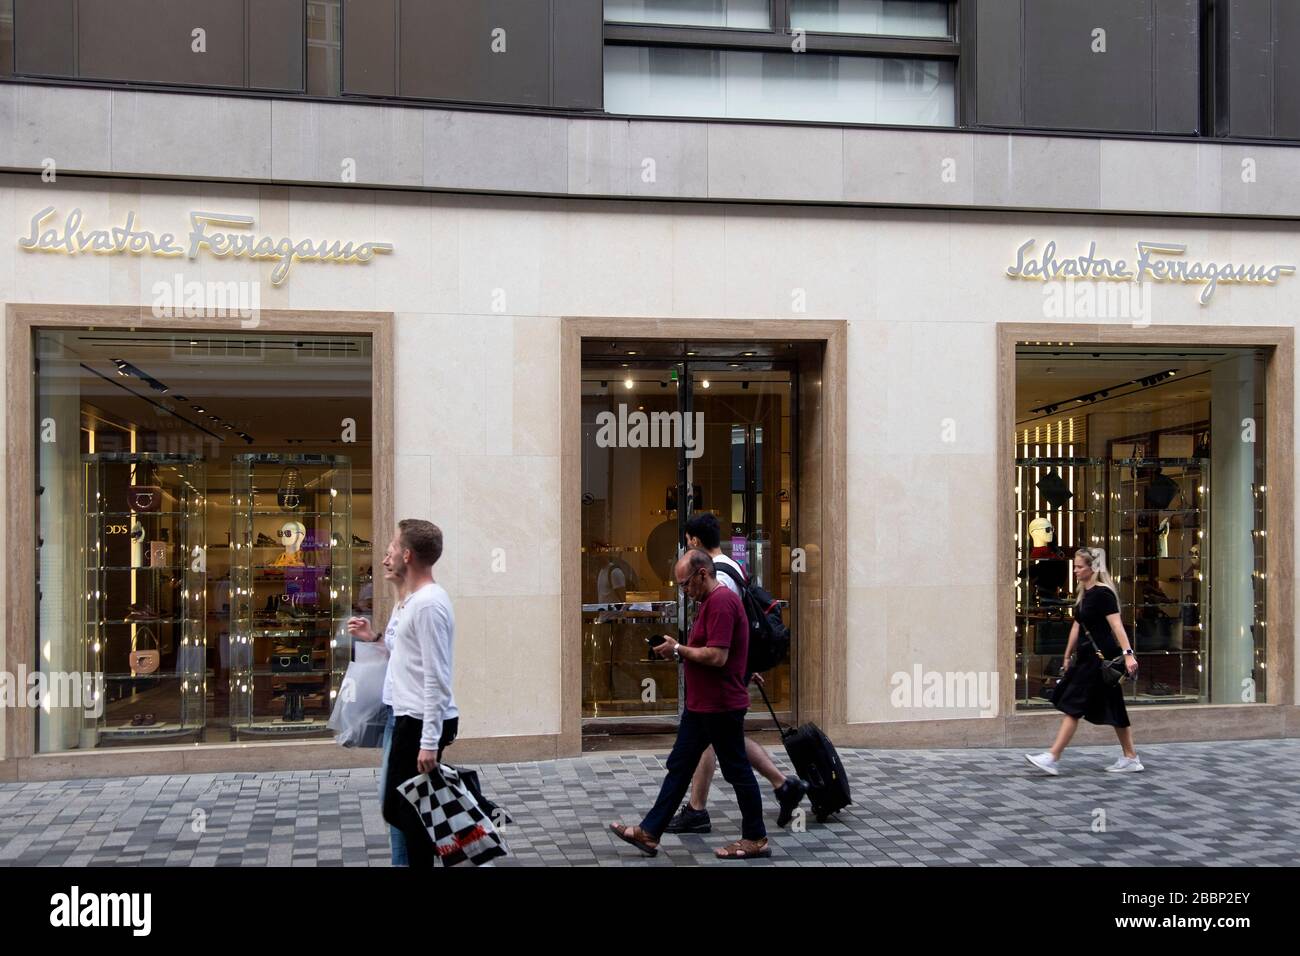 Salvatore Ferragamo store in Copenhagen, Denmark, Europe Stock Photo ...